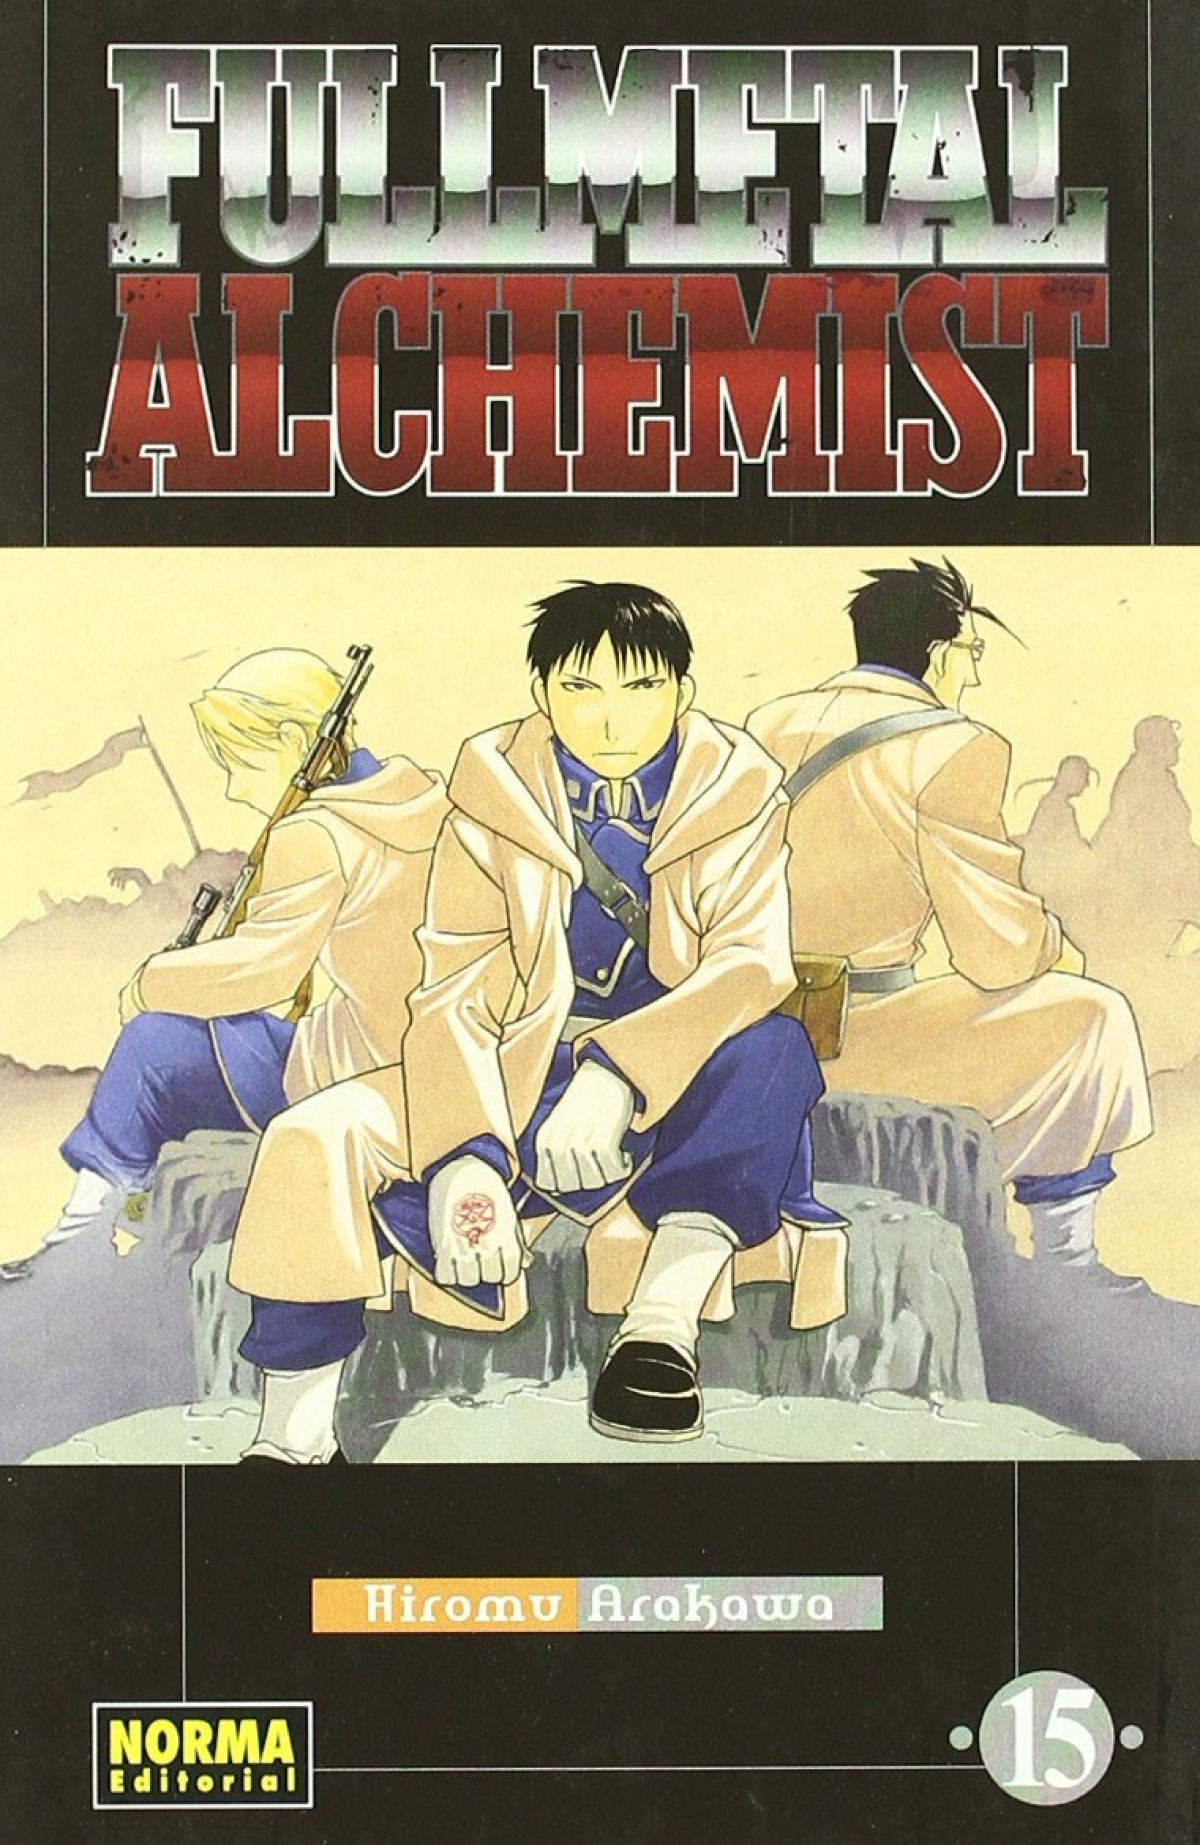 Fullmetal alchemist 15 - Arakawa, Hiromu